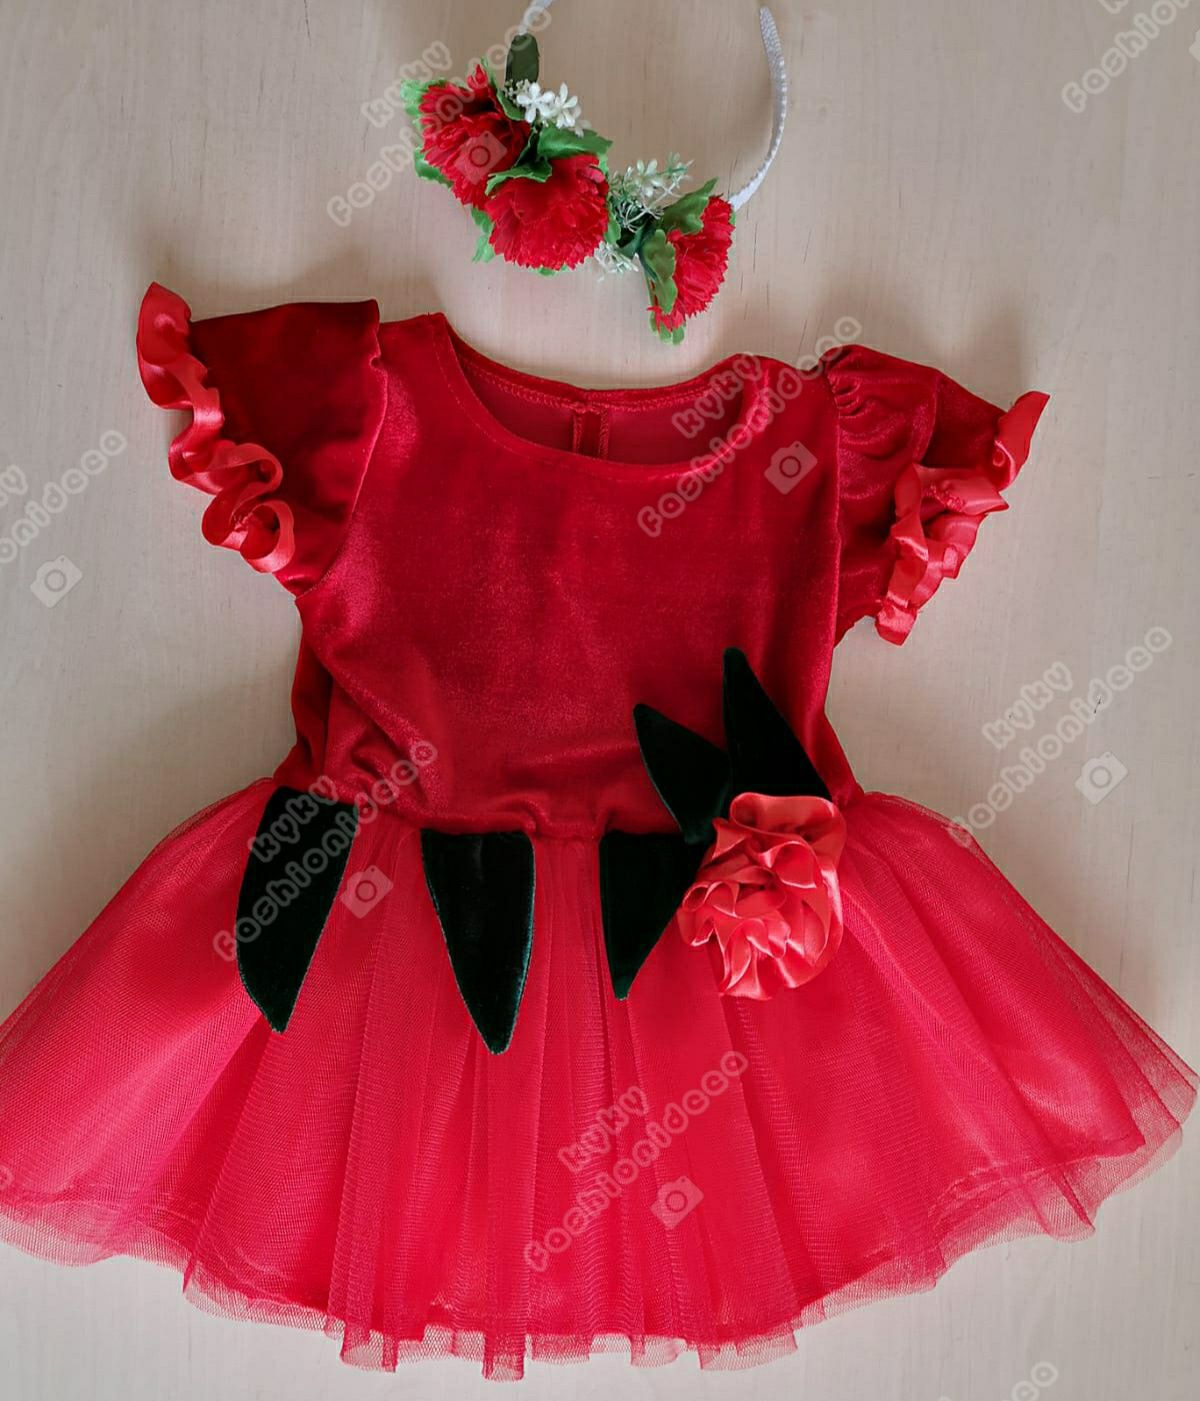 Costum garoafa rochita  rosie copii serbare spectacol halloween